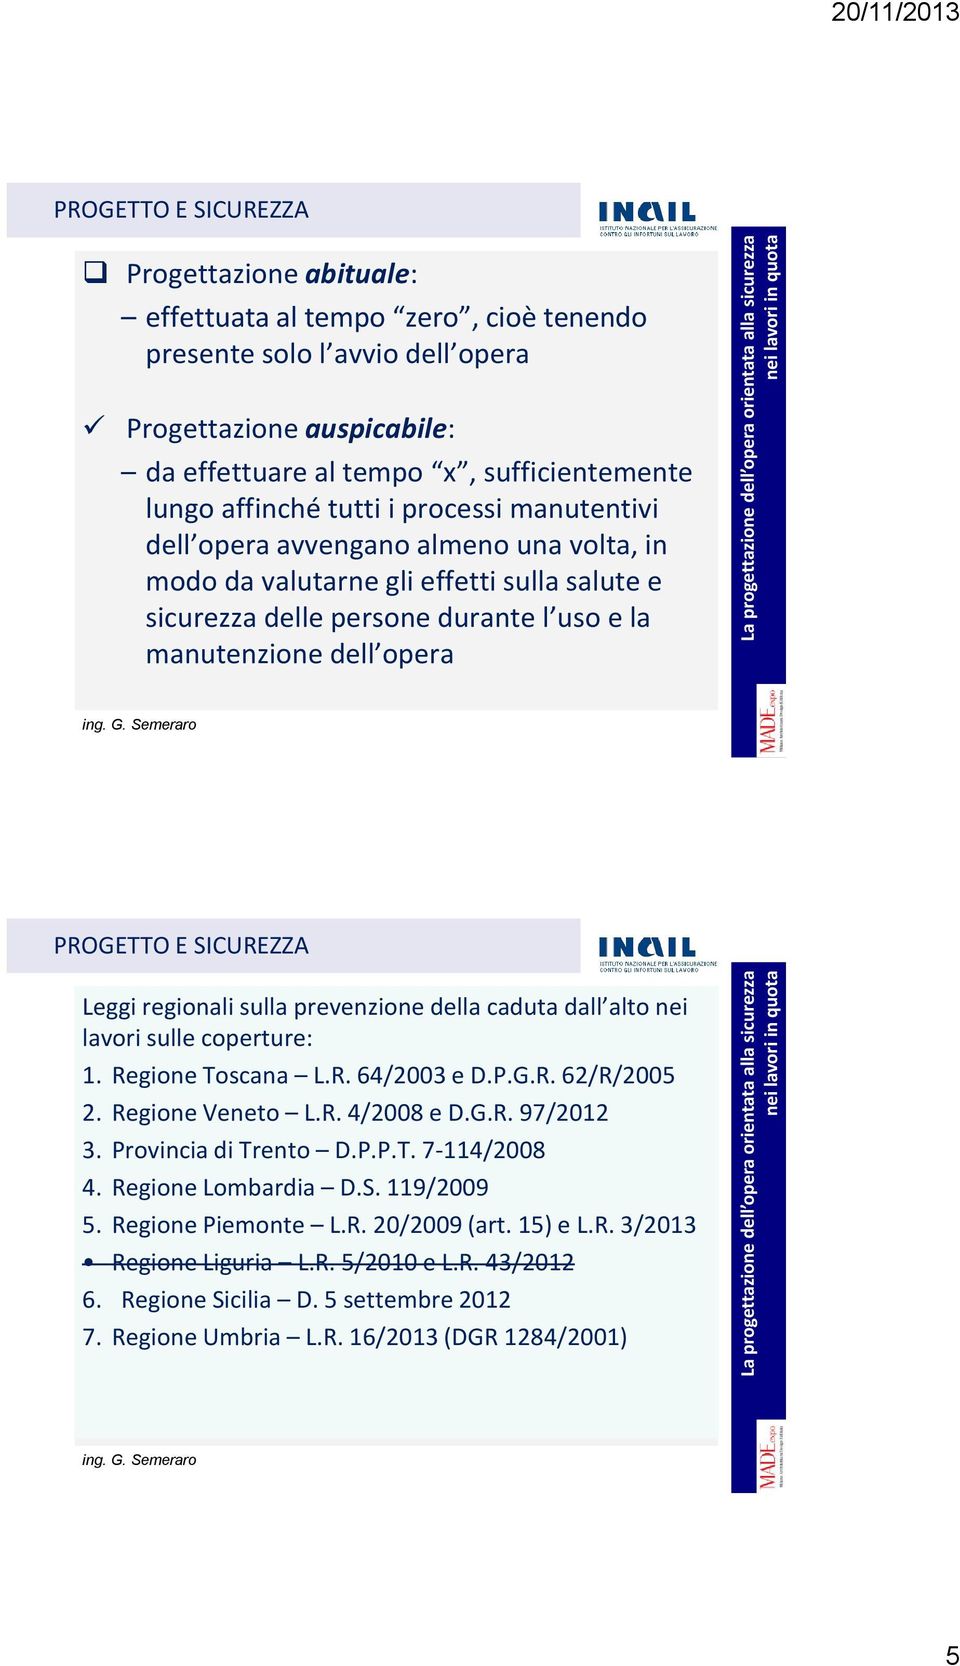 PROGETTO E SICUREZZA Leggi regionali sulla prevenzione della caduta dall alto nei lavori sulle coperture: 1. Regione Toscana L.R. 64/2003 e D.P.G.R. 62/R/2005 2. Regione Veneto L.R. 4/2008 e D.G.R. 97/2012 3.